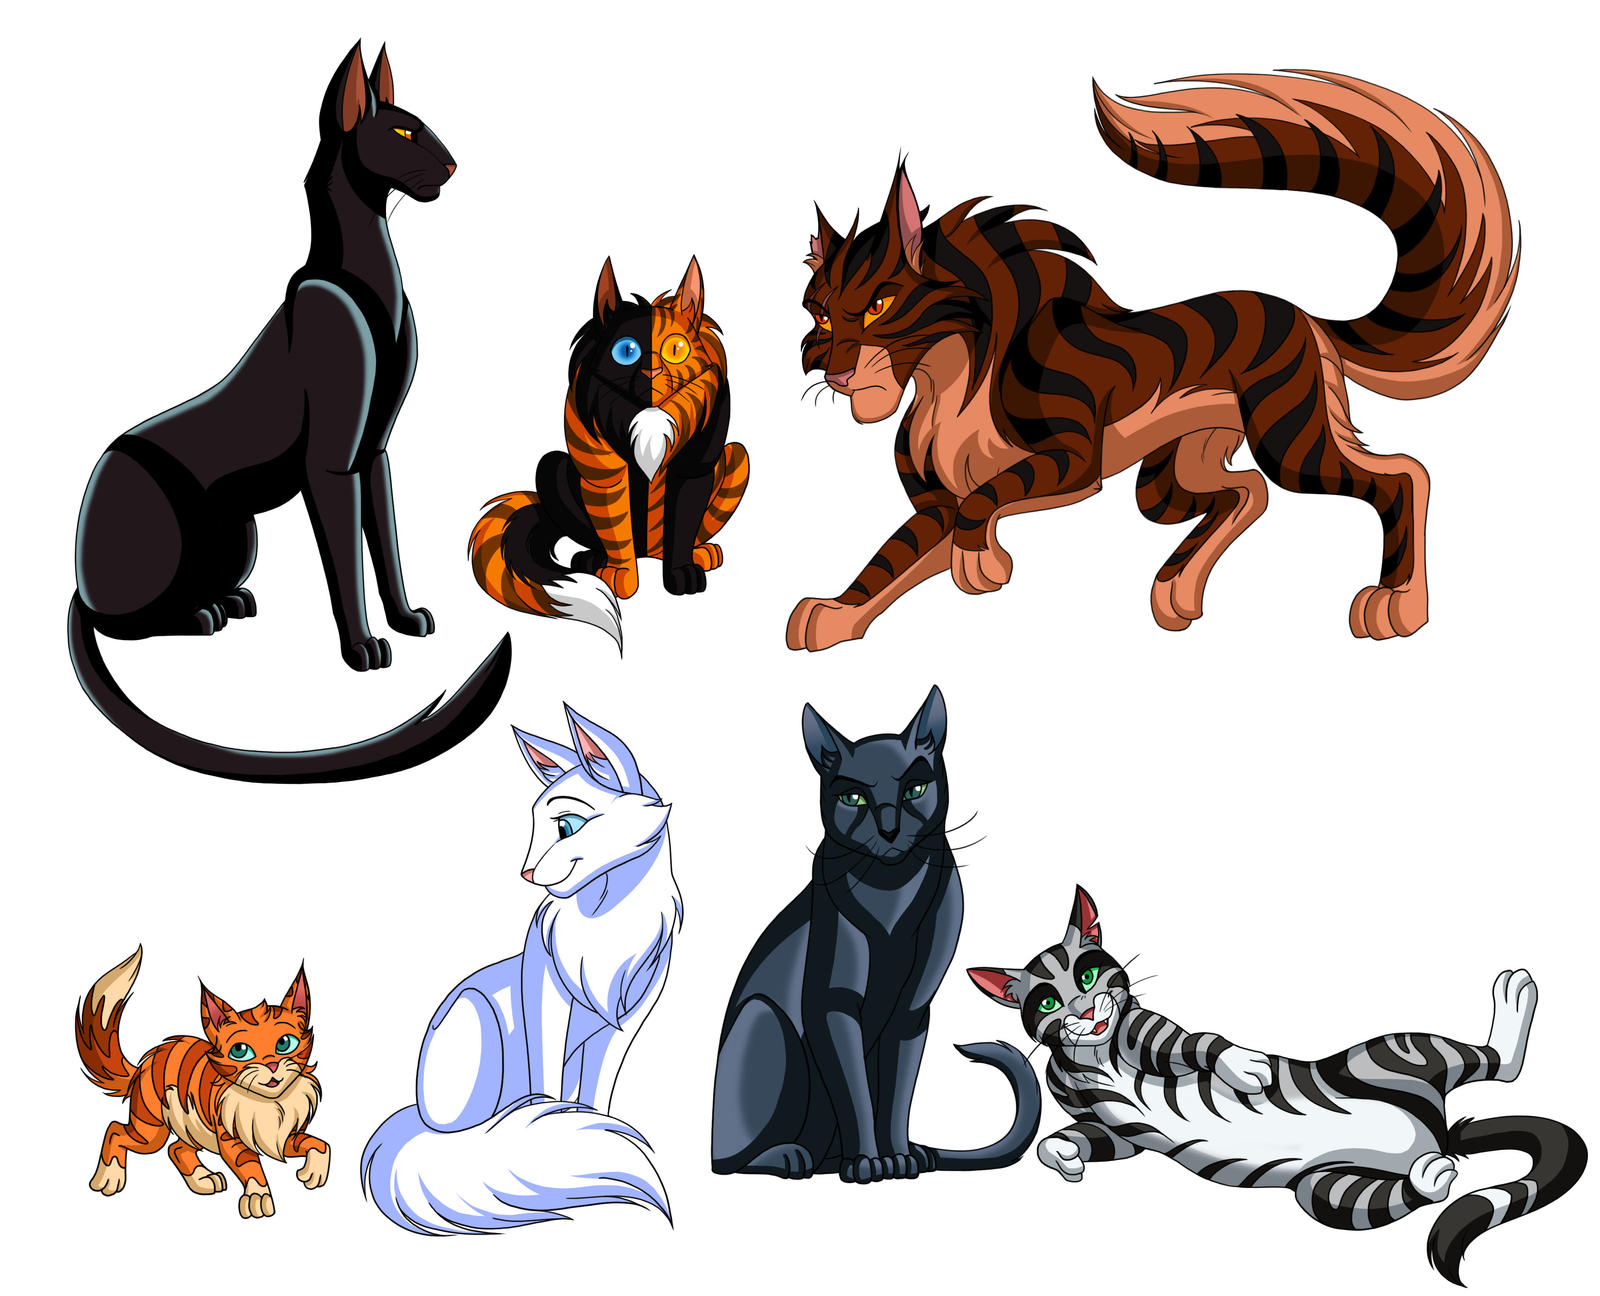 Warrior Cats- Warriors 2 GONE by Kasara-Designs on DeviantArt